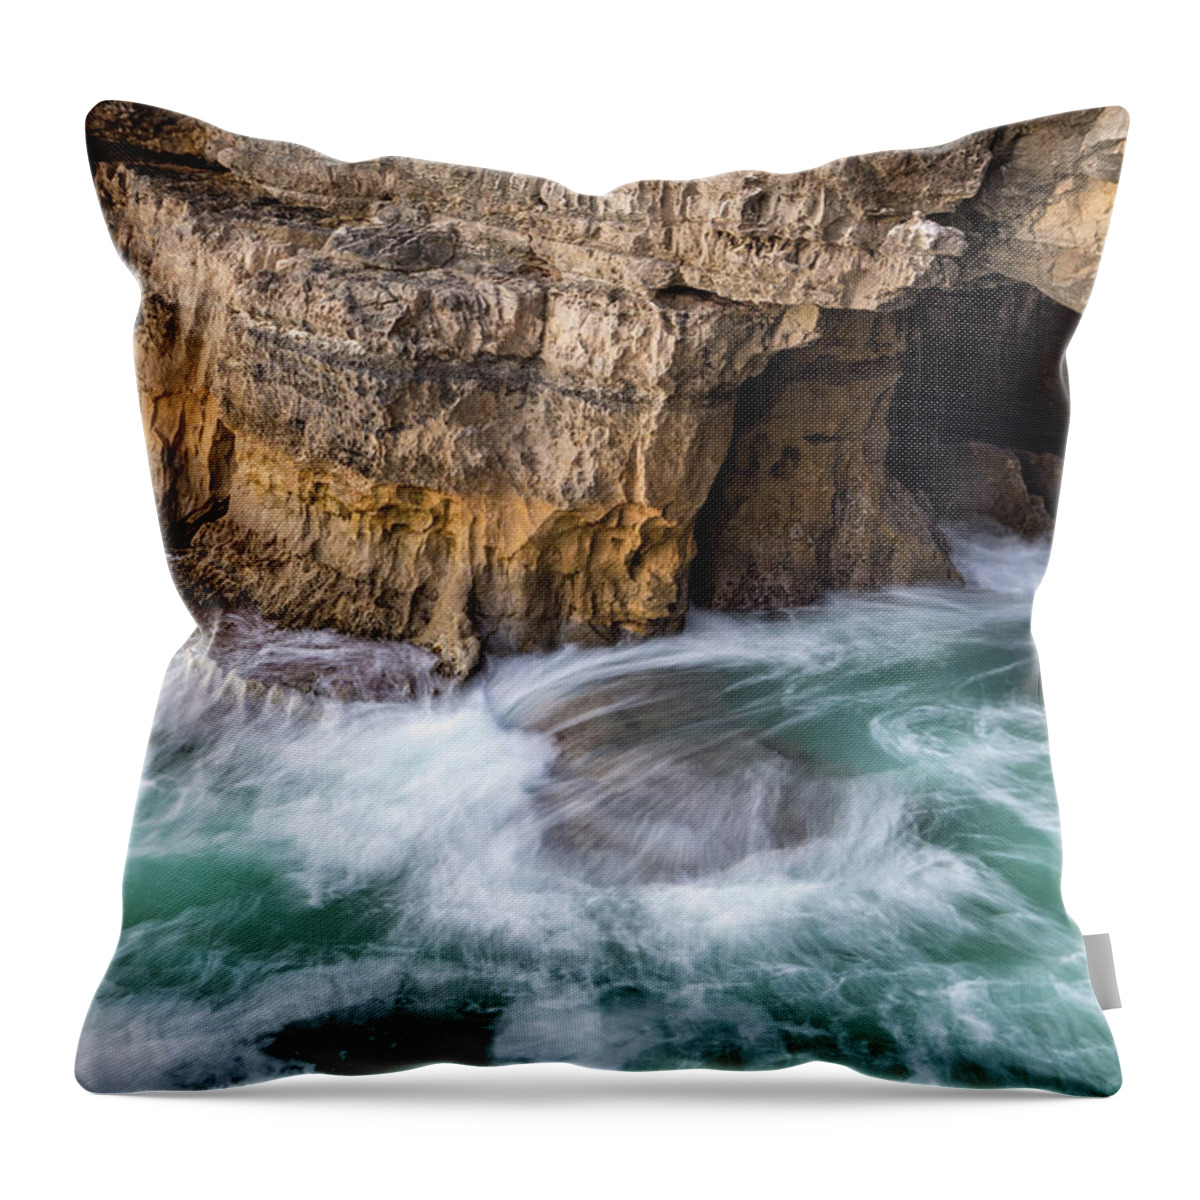 Georgia Mizuleva Throw Pillow featuring the photograph Ocean Muscling into a Cave by Georgia Mizuleva